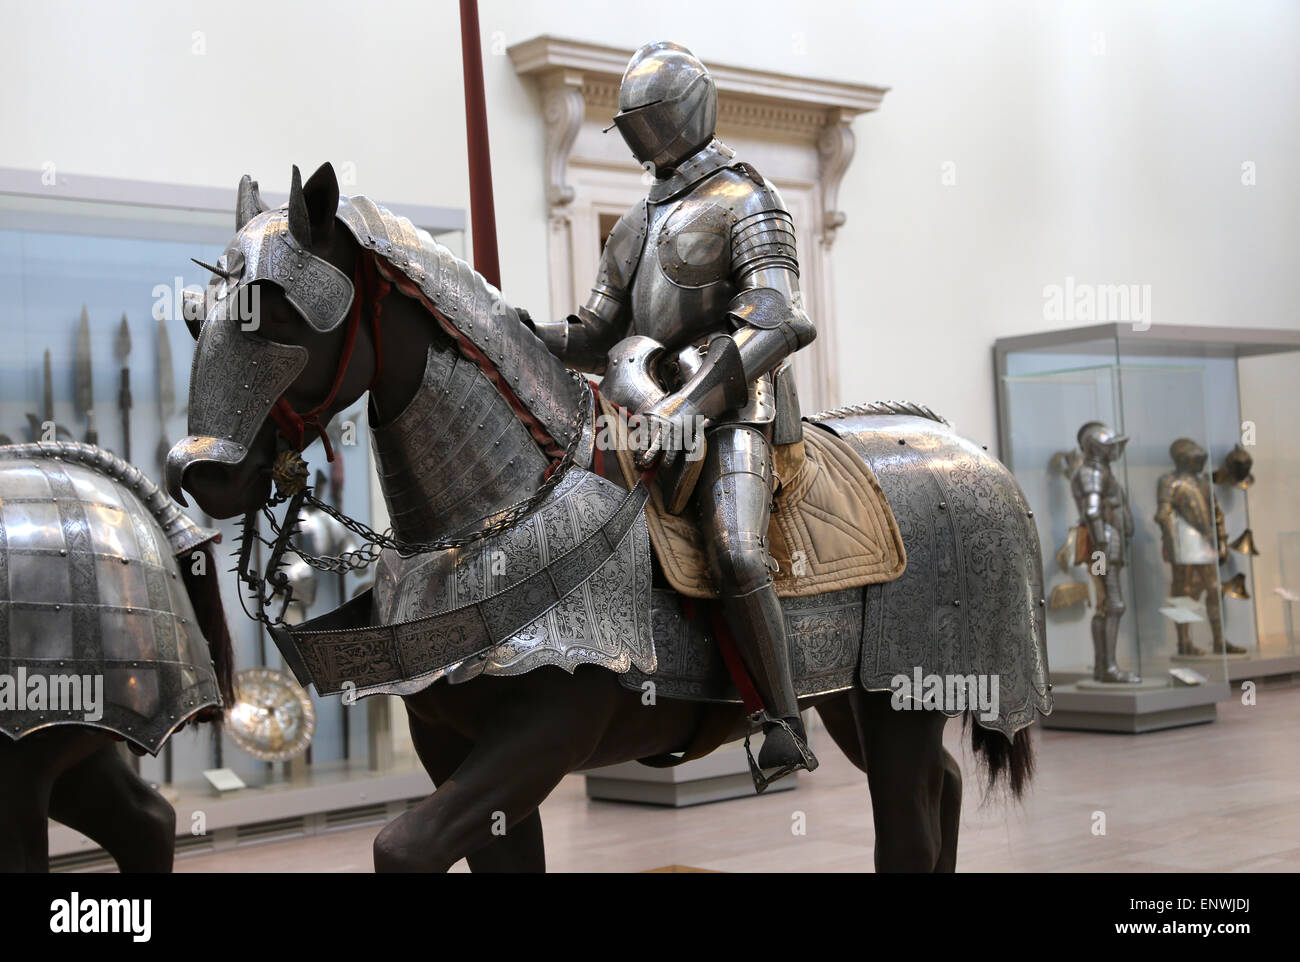 Armor per combattere. Armature di piastra per uomo e cavallo. L'Europa. Metropolitan Museum of Art. New York. Stati Uniti d'America. Foto Stock